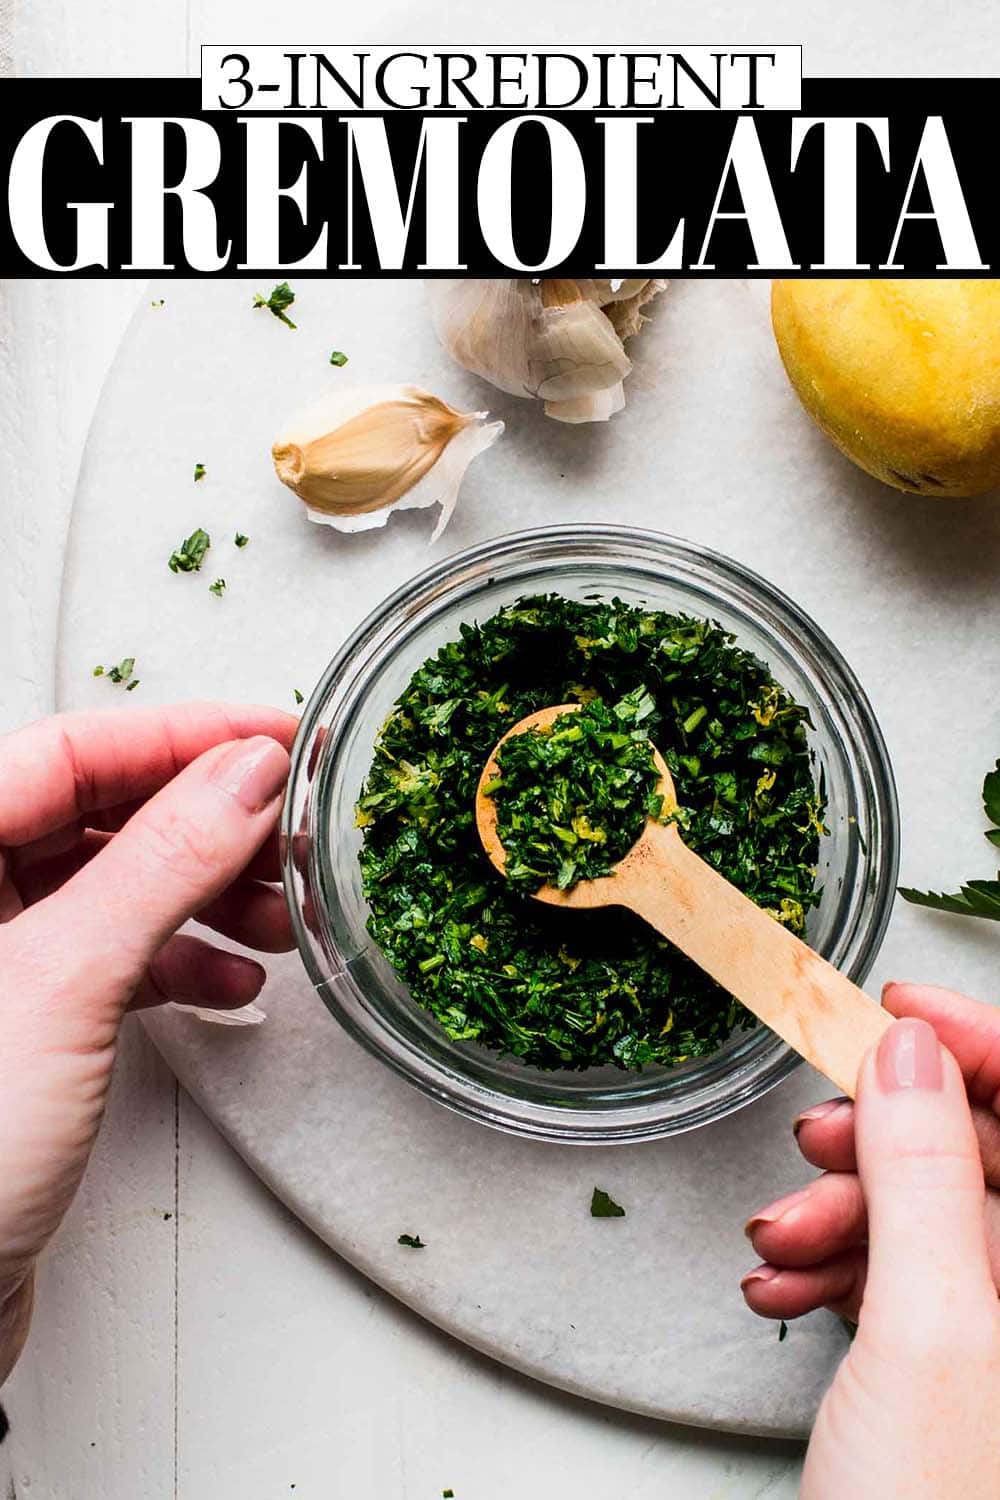 How to Make Gremolata